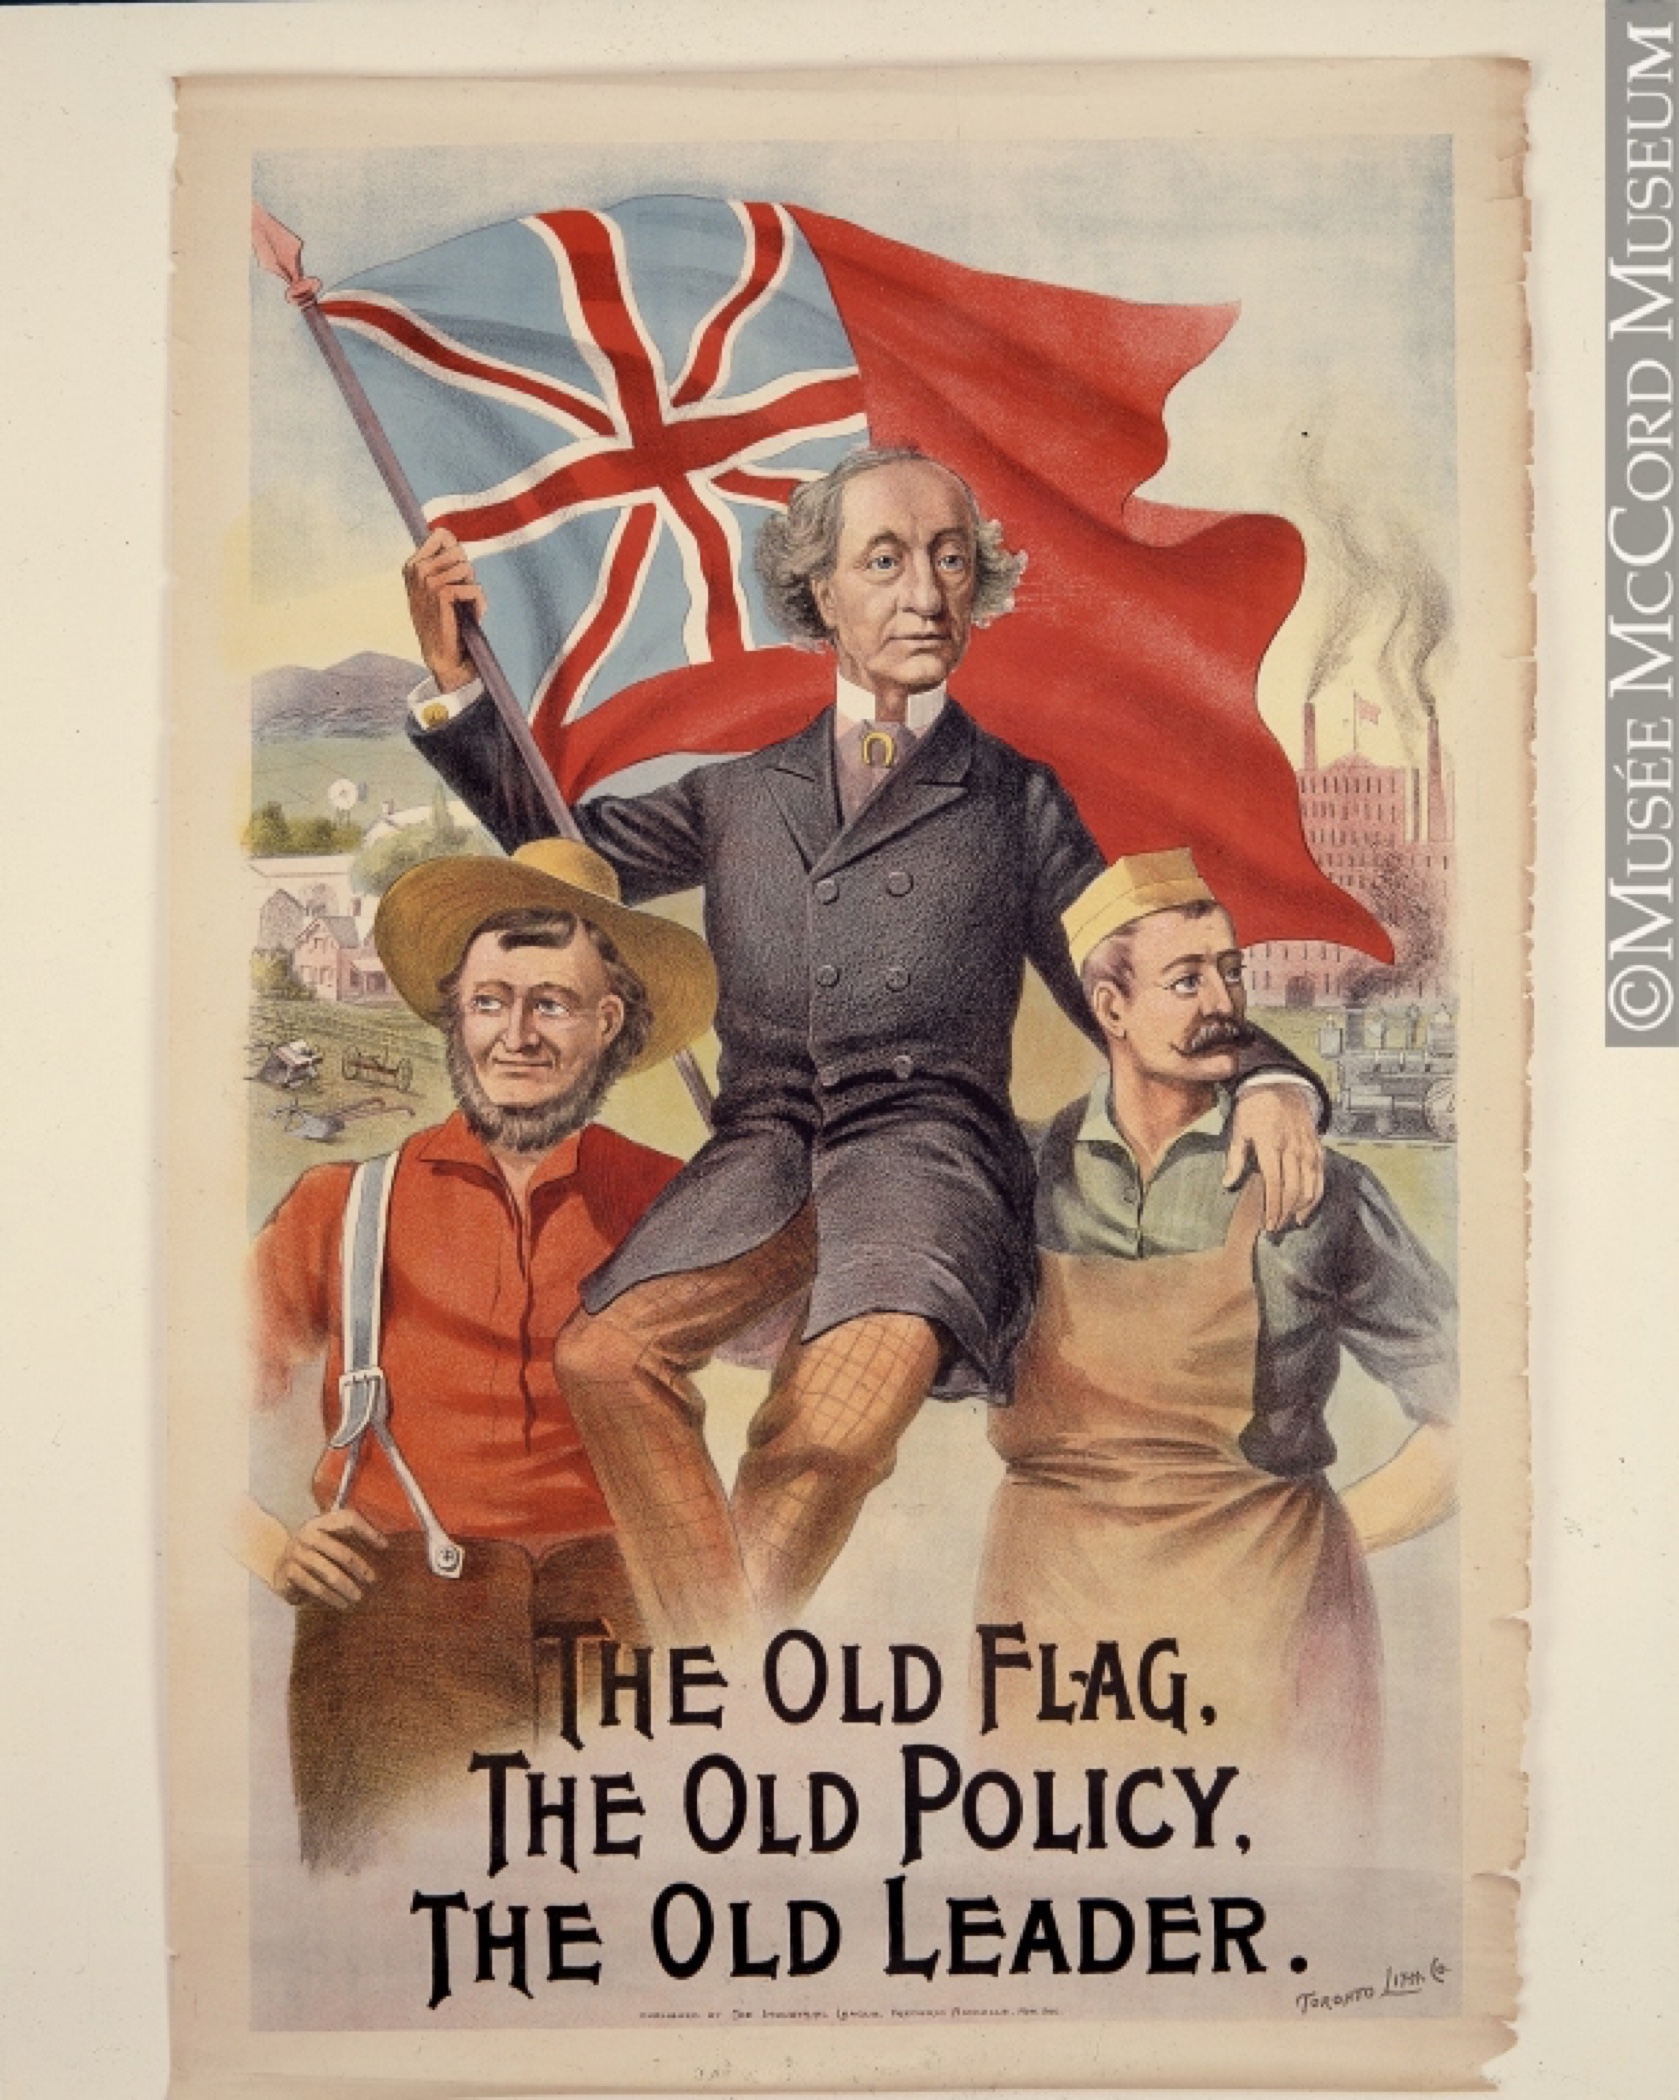 Une aquarelle colorée, conçue comme une affiche électorale, représentant deux hommes - un agriculteur et peut-être un boucher - qui, ensemble, ont hissé sur leurs épaules Sir John A. Macdonald, lequel tient le drapeau britannique - connu sous le nom de "Red Ensign", son visage affichant une expression de fierté. Au bas de l’affiche sont inscrits les mots « Le vieux drapeau, la vieille politique, le vieux leader ».